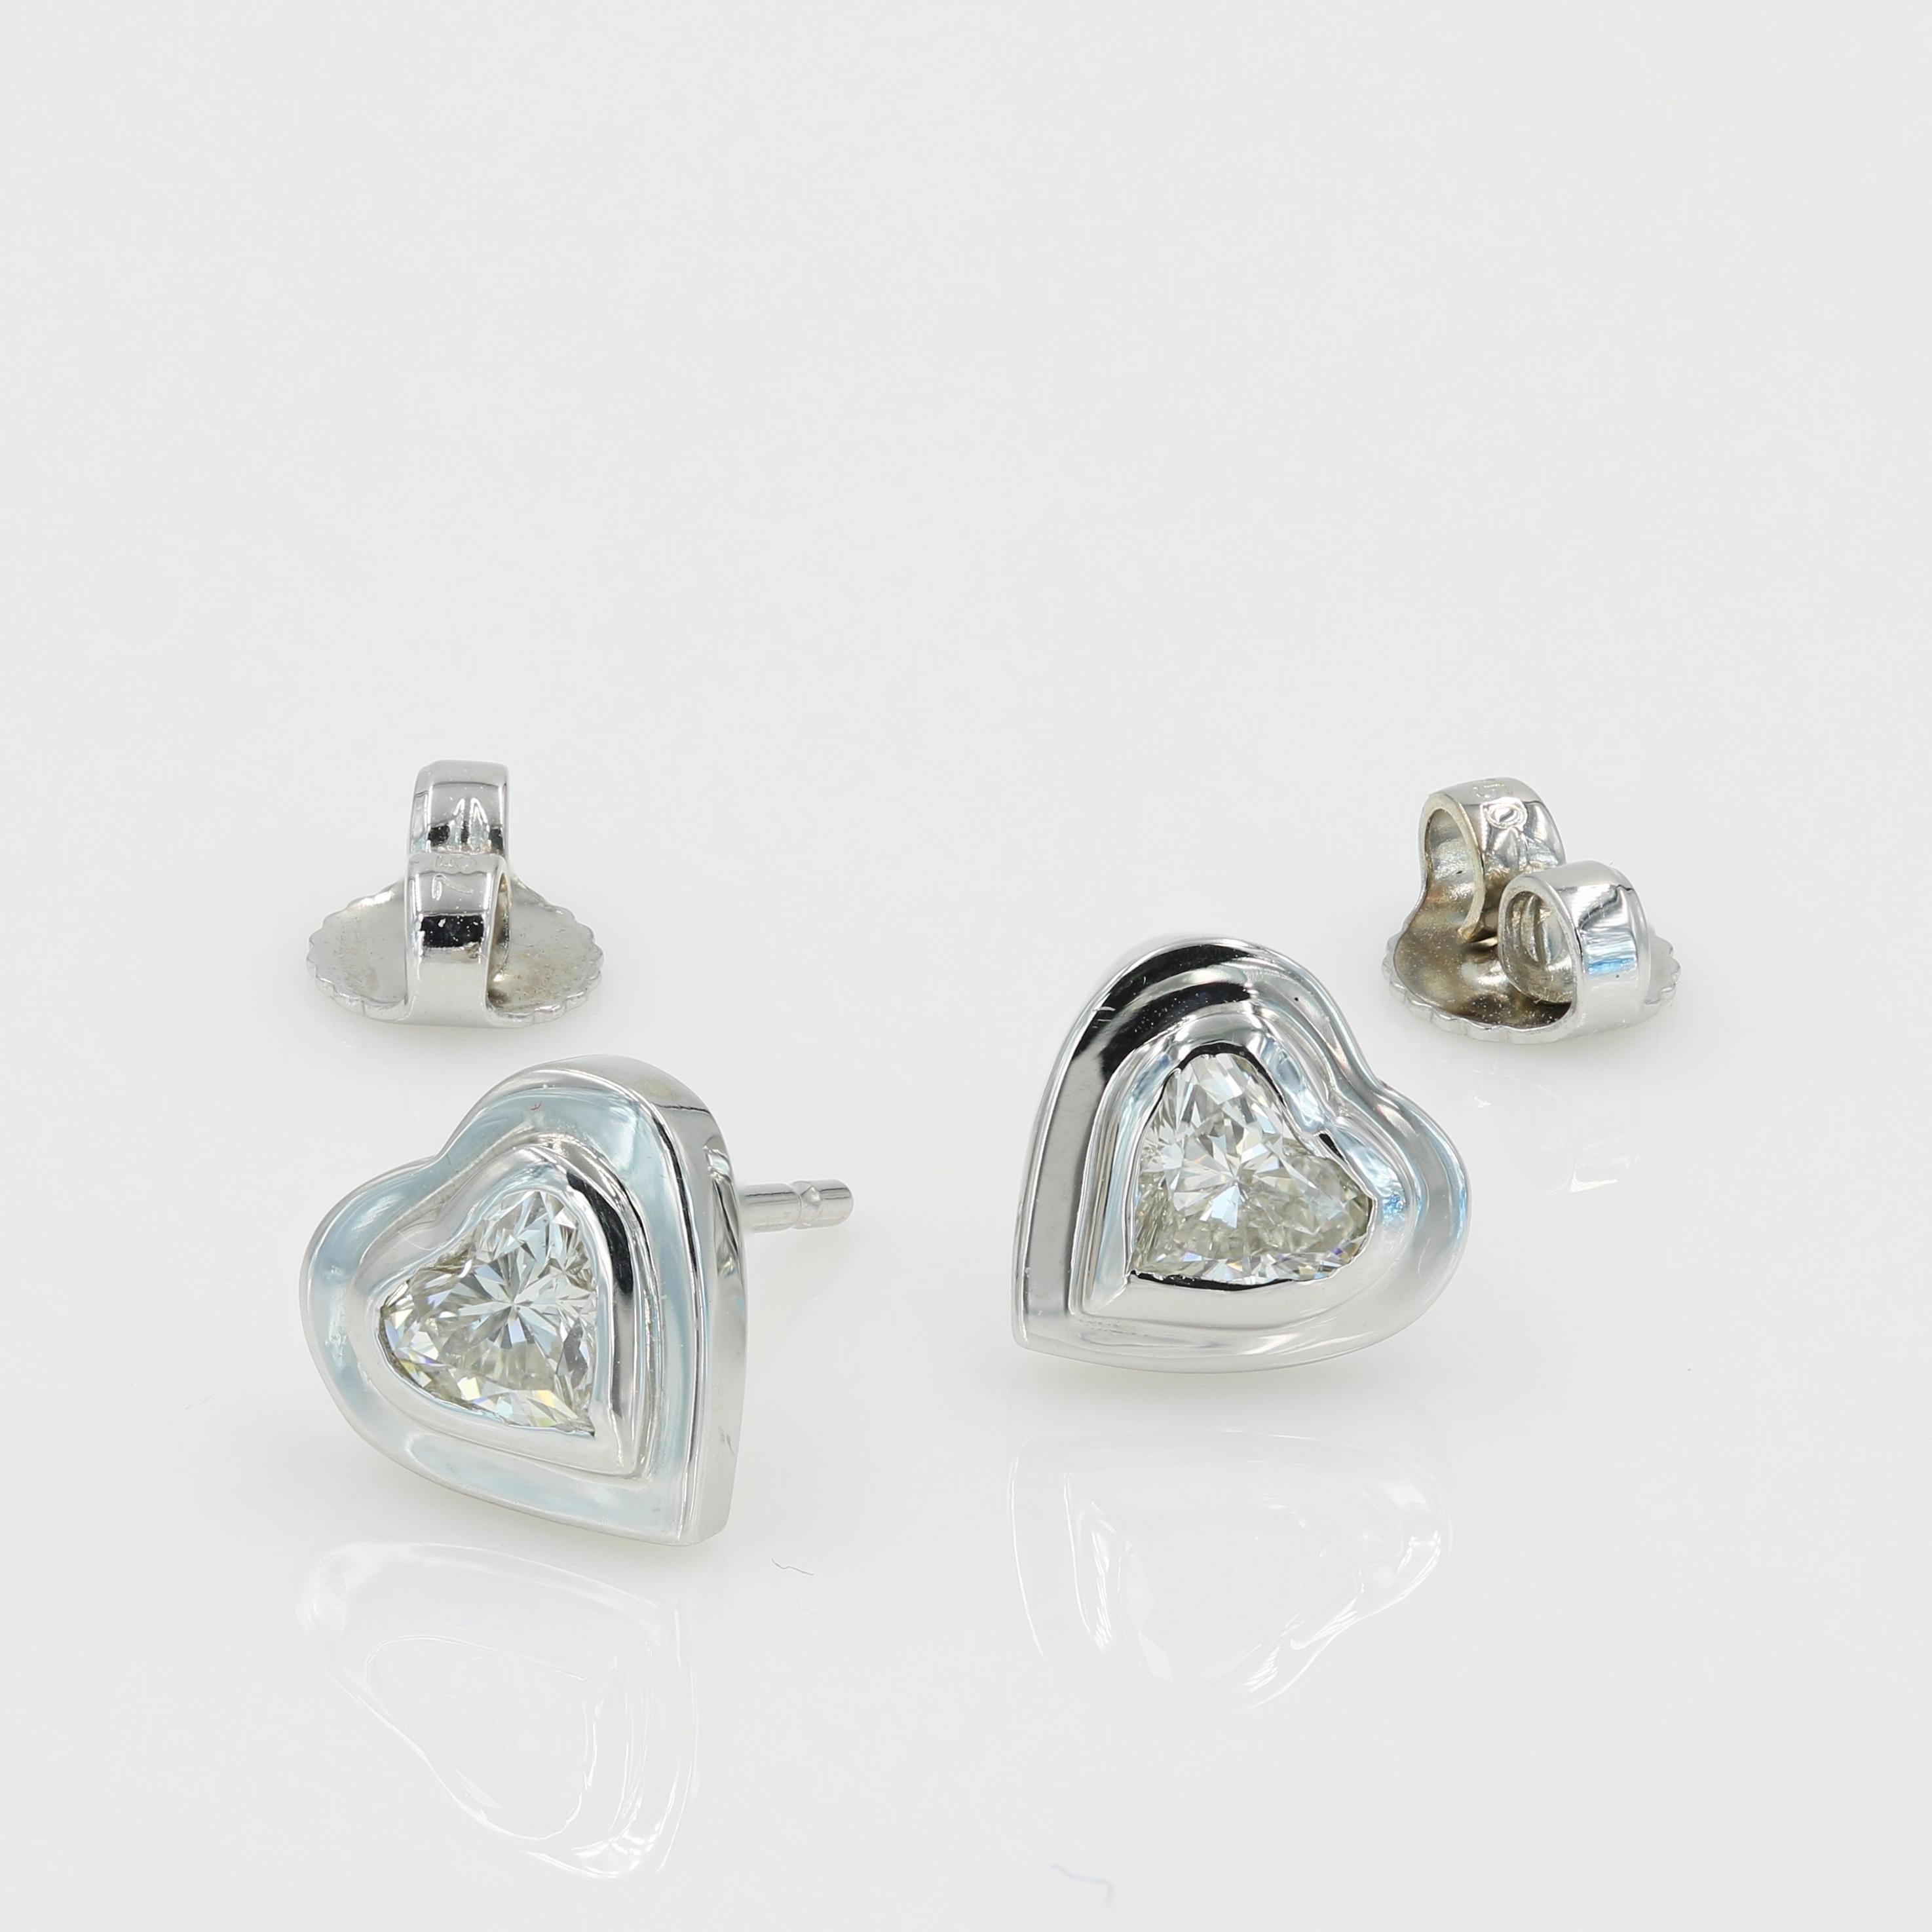 heart shape diamond earrings